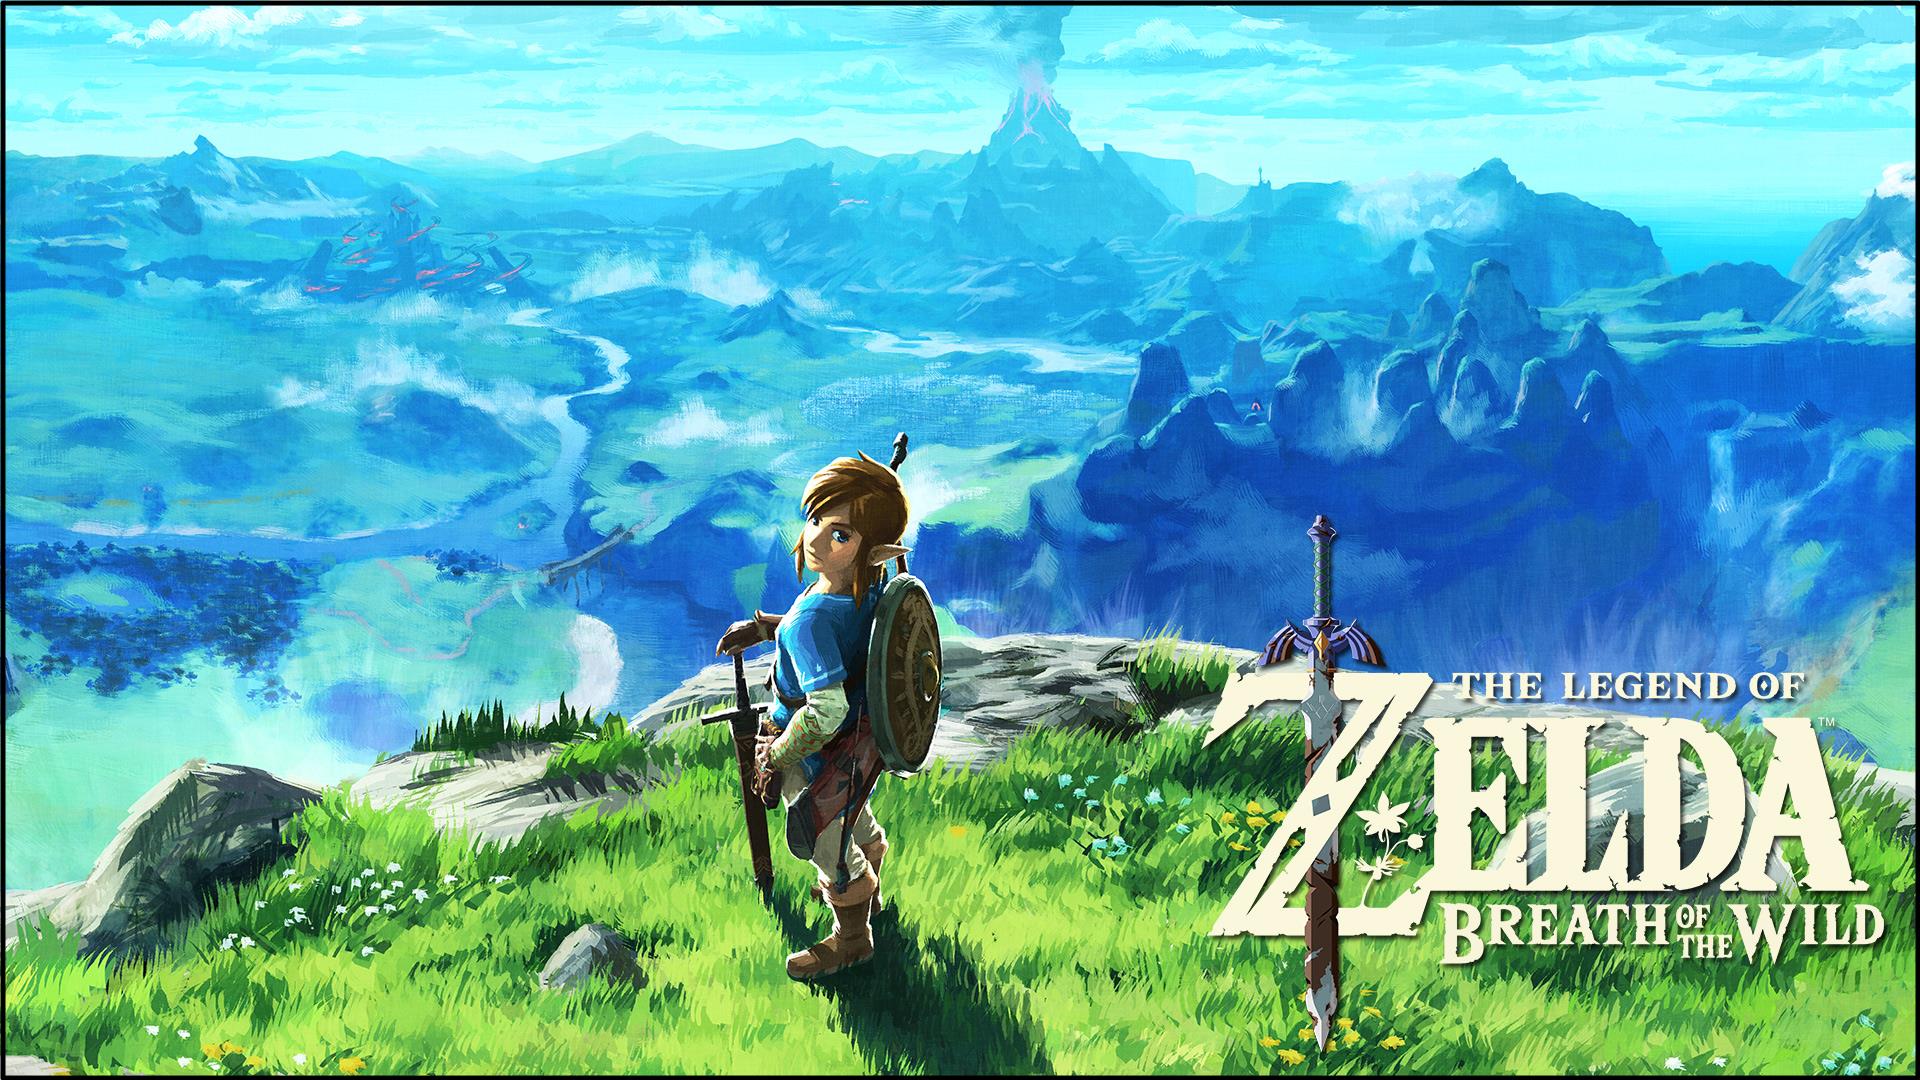 #1 – The Legend of Zelda Breath of the Wild